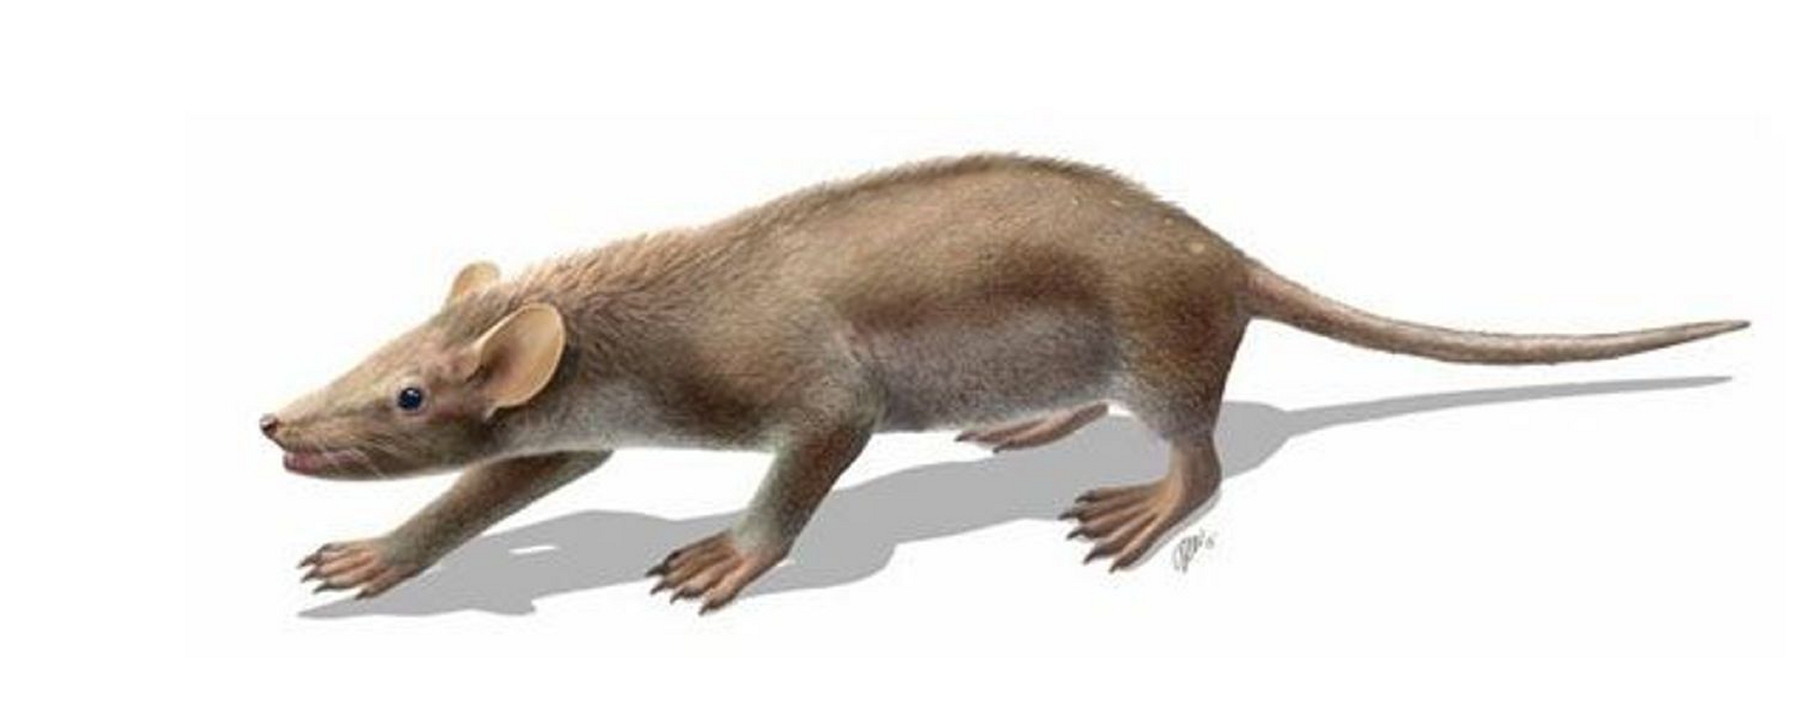 Sur son dos, Spinolestes xenarthrosus cachait des épines au milieu de son pelage. Ce petit mammifère de 25 cm de long, qui pesait moins de 100 grammes, vivait au Crétacé inférieur, avant l'impact de l'astéroïde qui a creusé le cratère de Chicxulub. L'espèce a disparu, comme beaucoup d'autres, dont les dinosaures non aviens. © O. Sanisidro